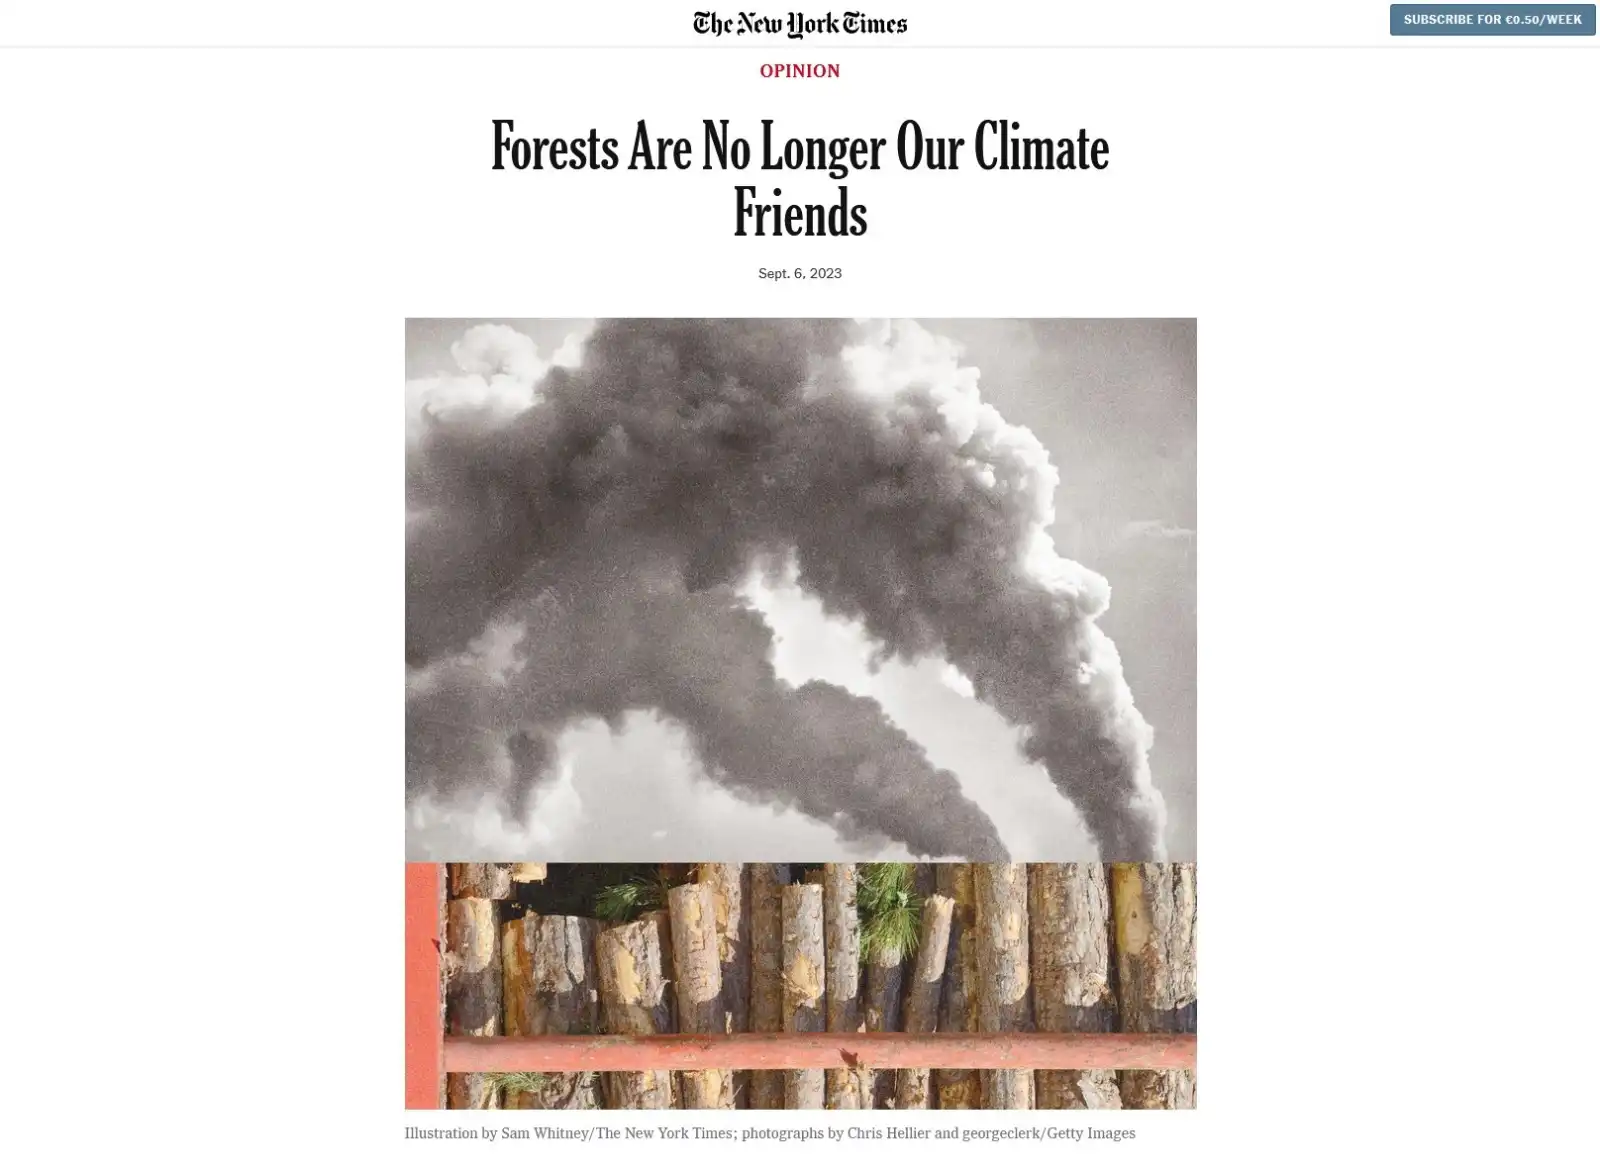 Lasy nie są już naszymi klimatycznymi przyjaciółmi